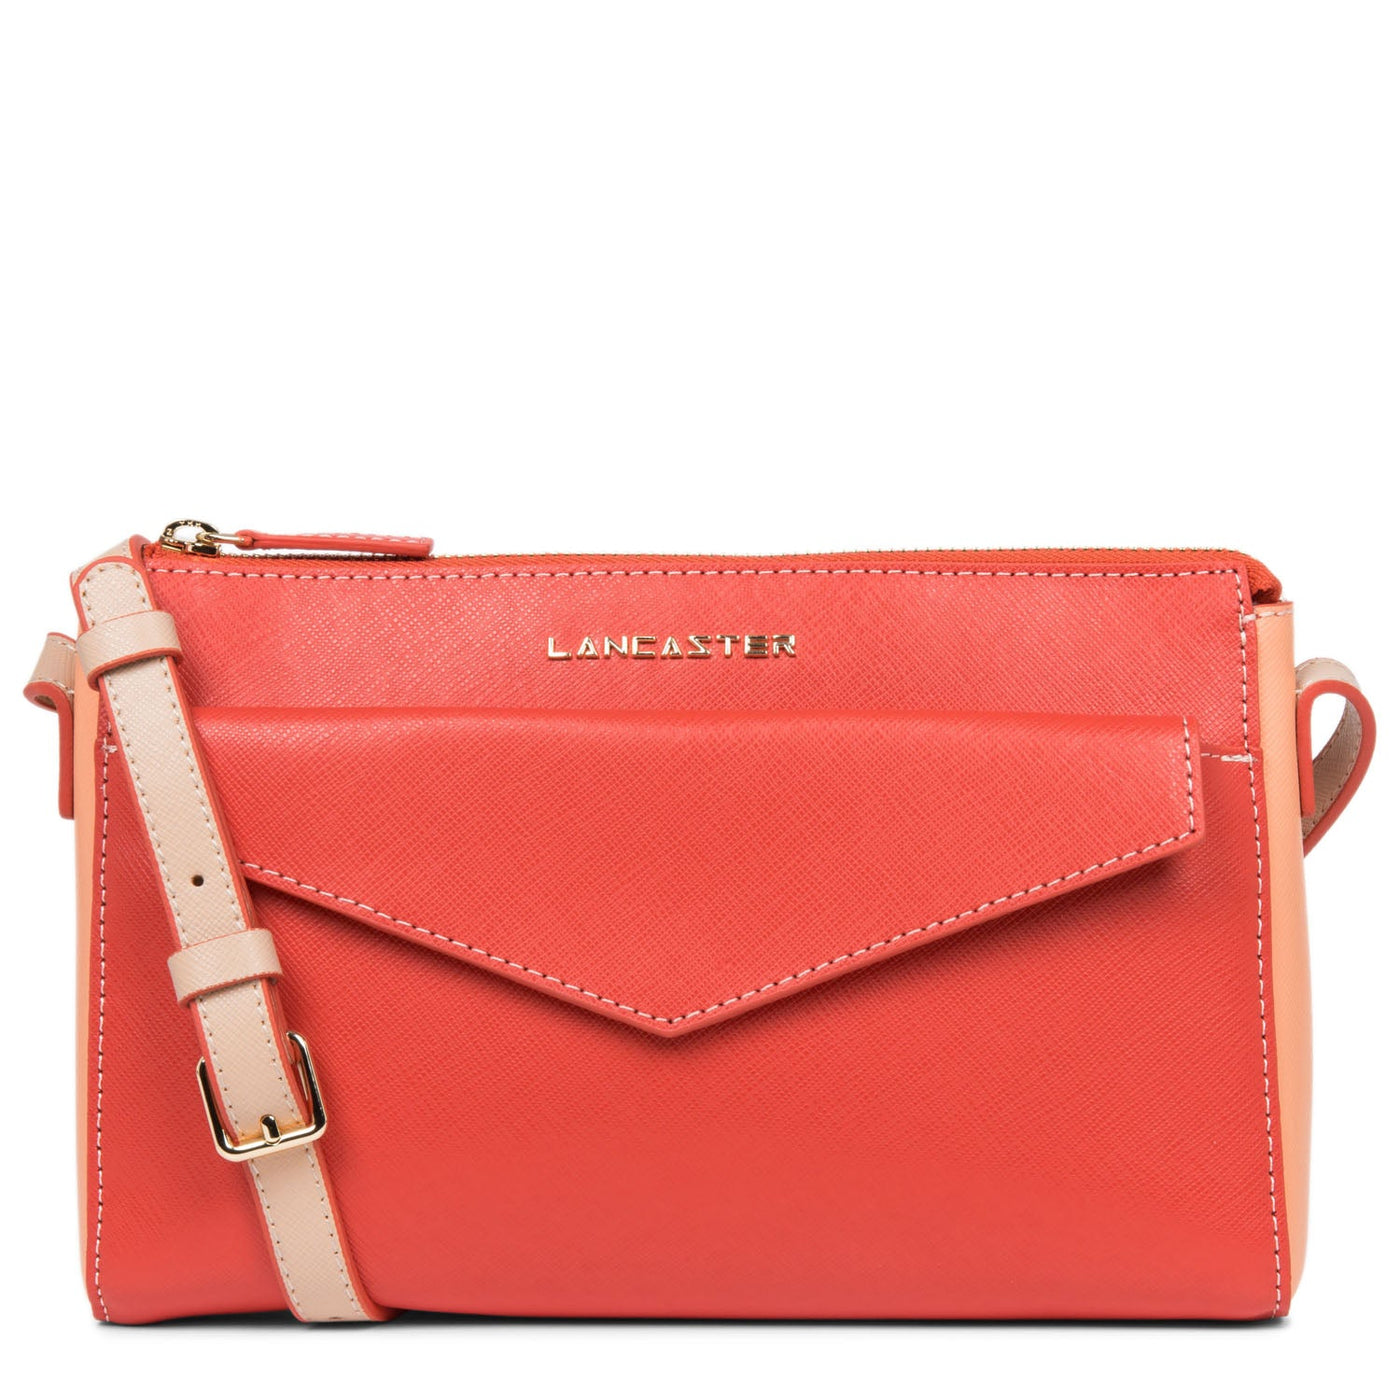 crossbody bag - saffiano signature #couleur_pasteque-canyon-poudre